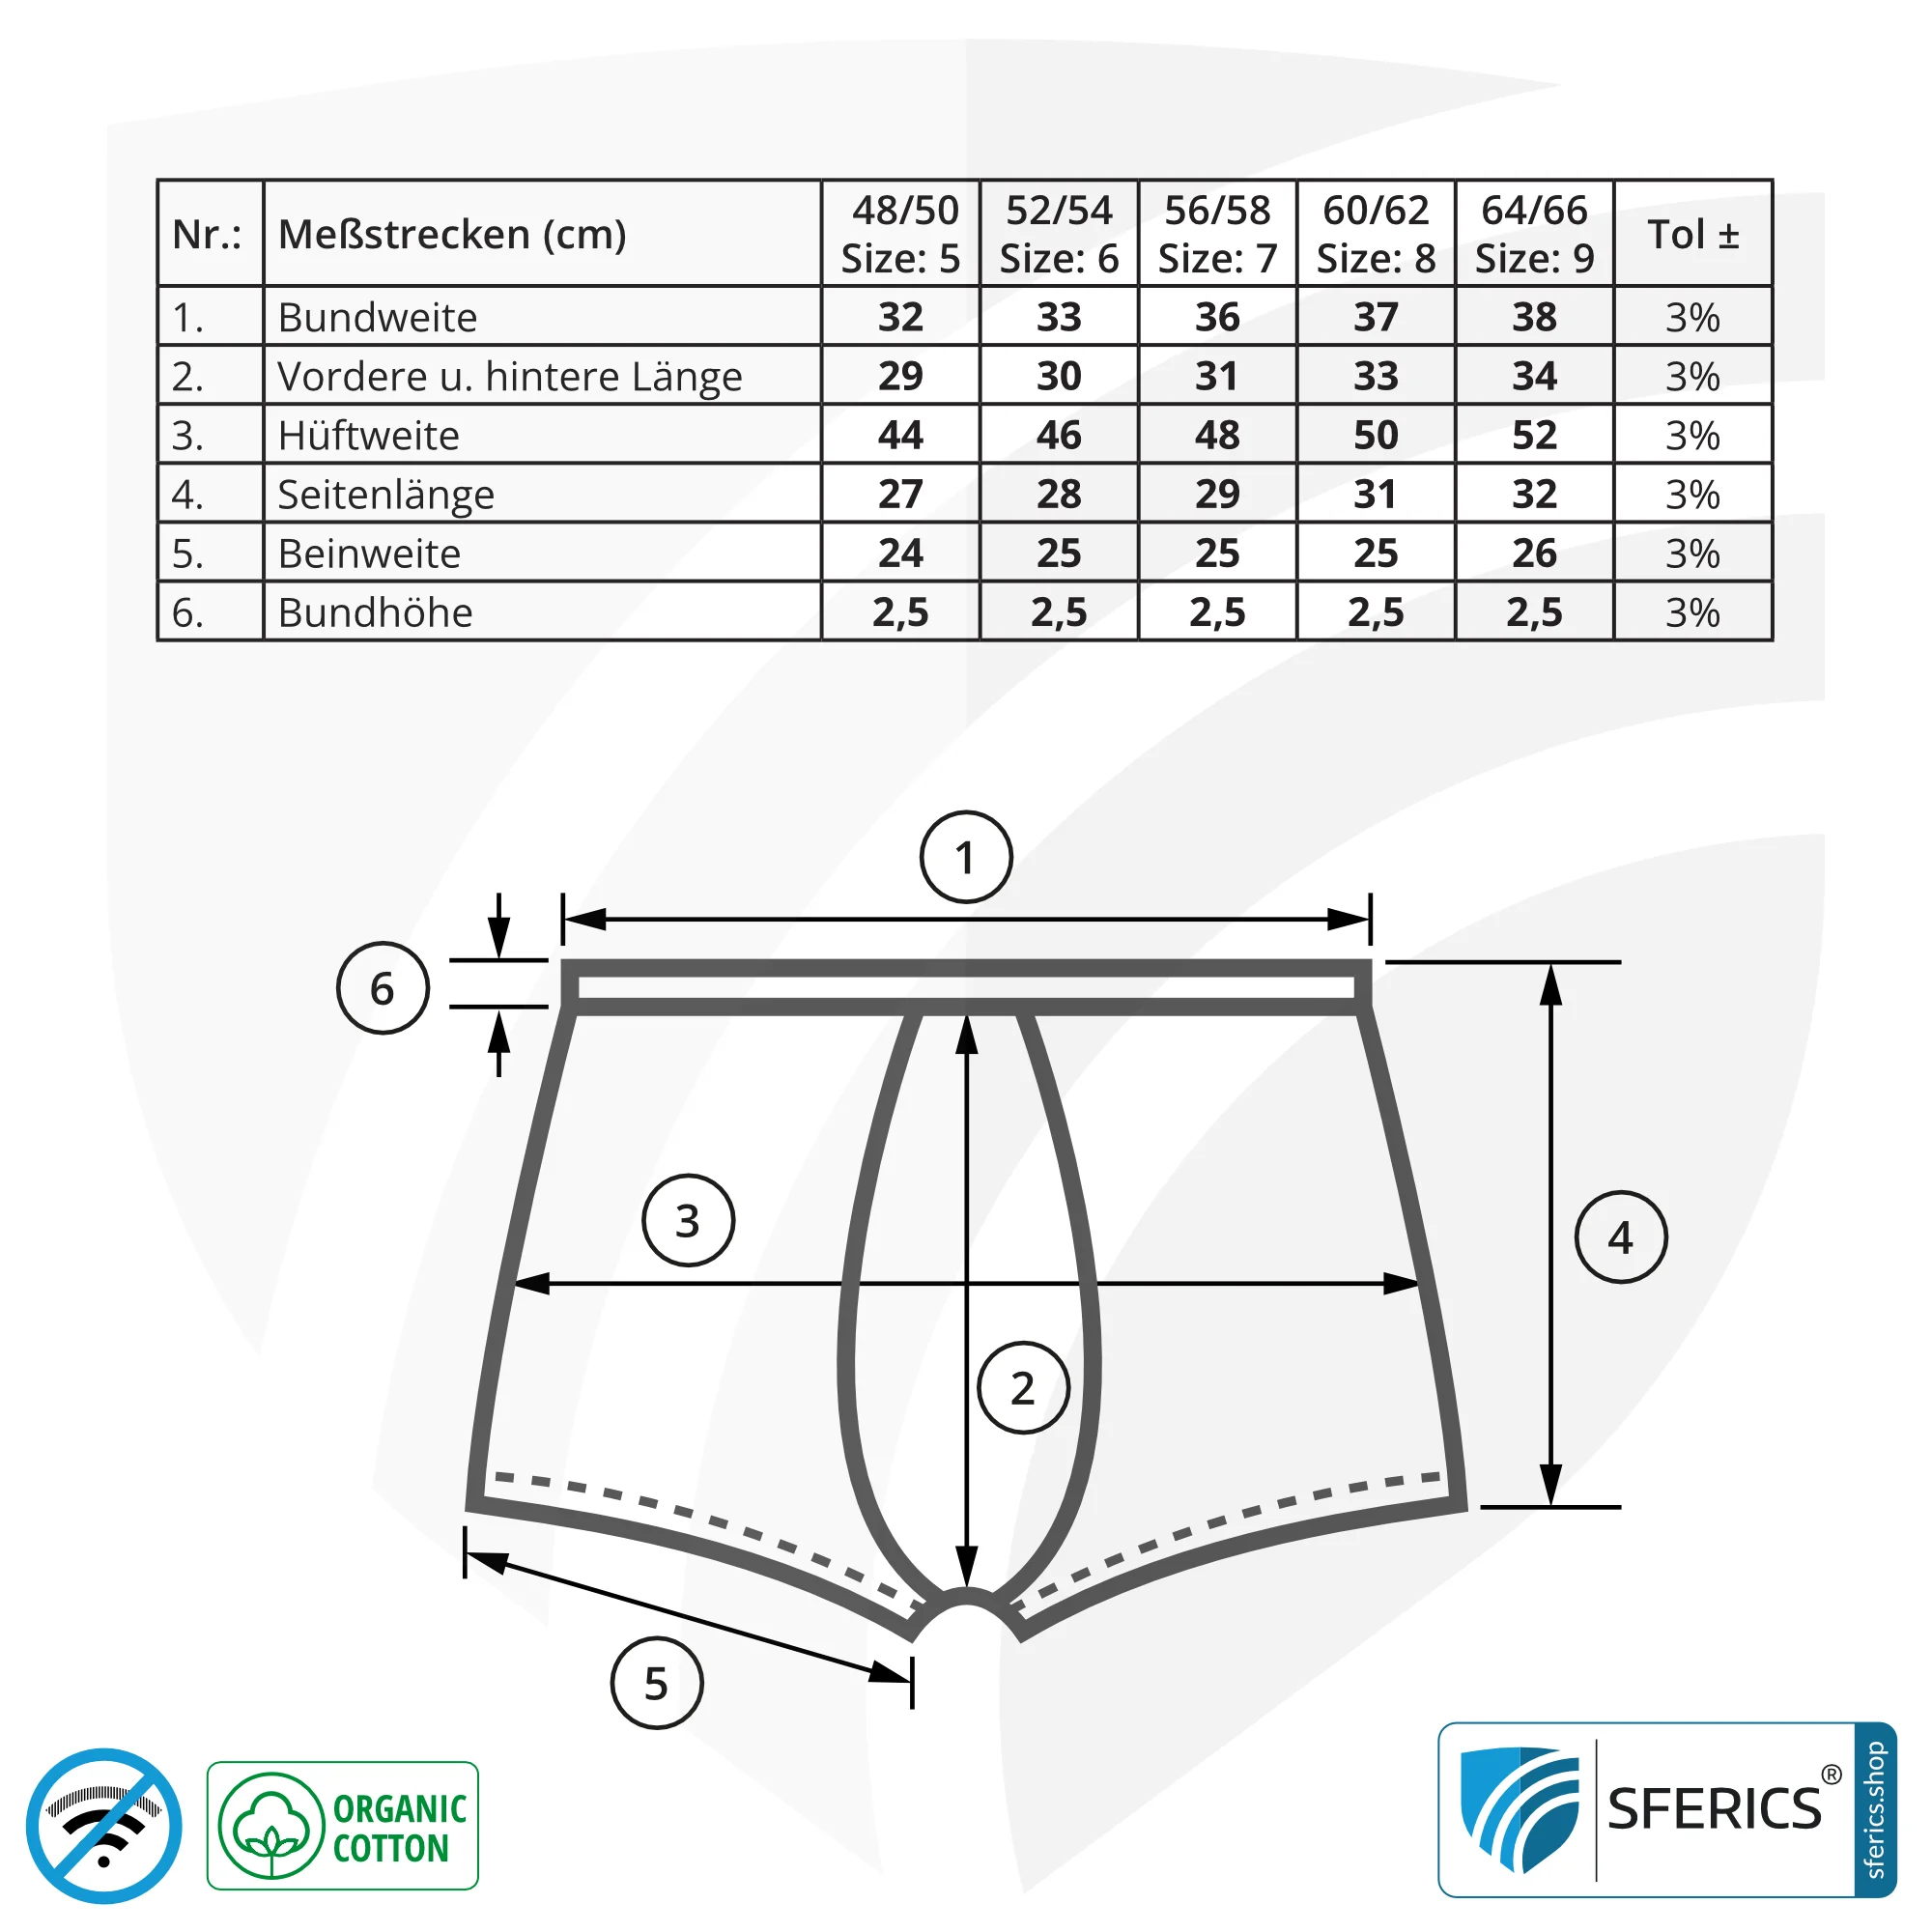 Abschirmendes ANTIWAVE Shorts für Herren | Schutz bis zu 30 dB vor HF Elektrosmog (Handy, WLAN, LTE) | Ideal für elektrosensible Menschen